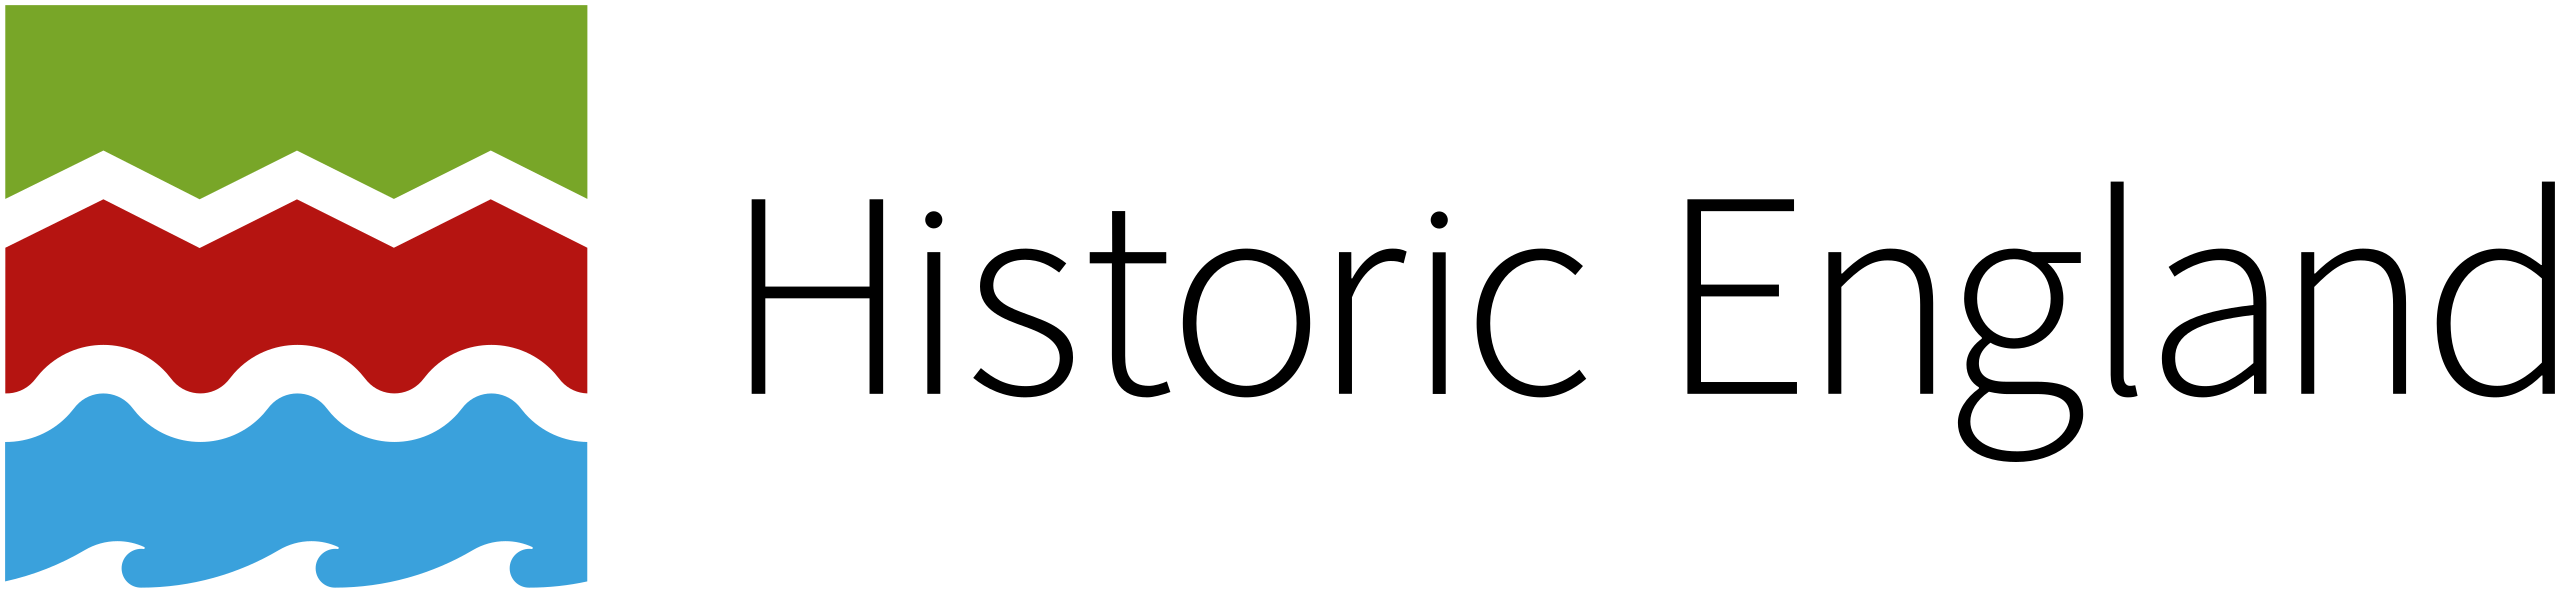 england logo